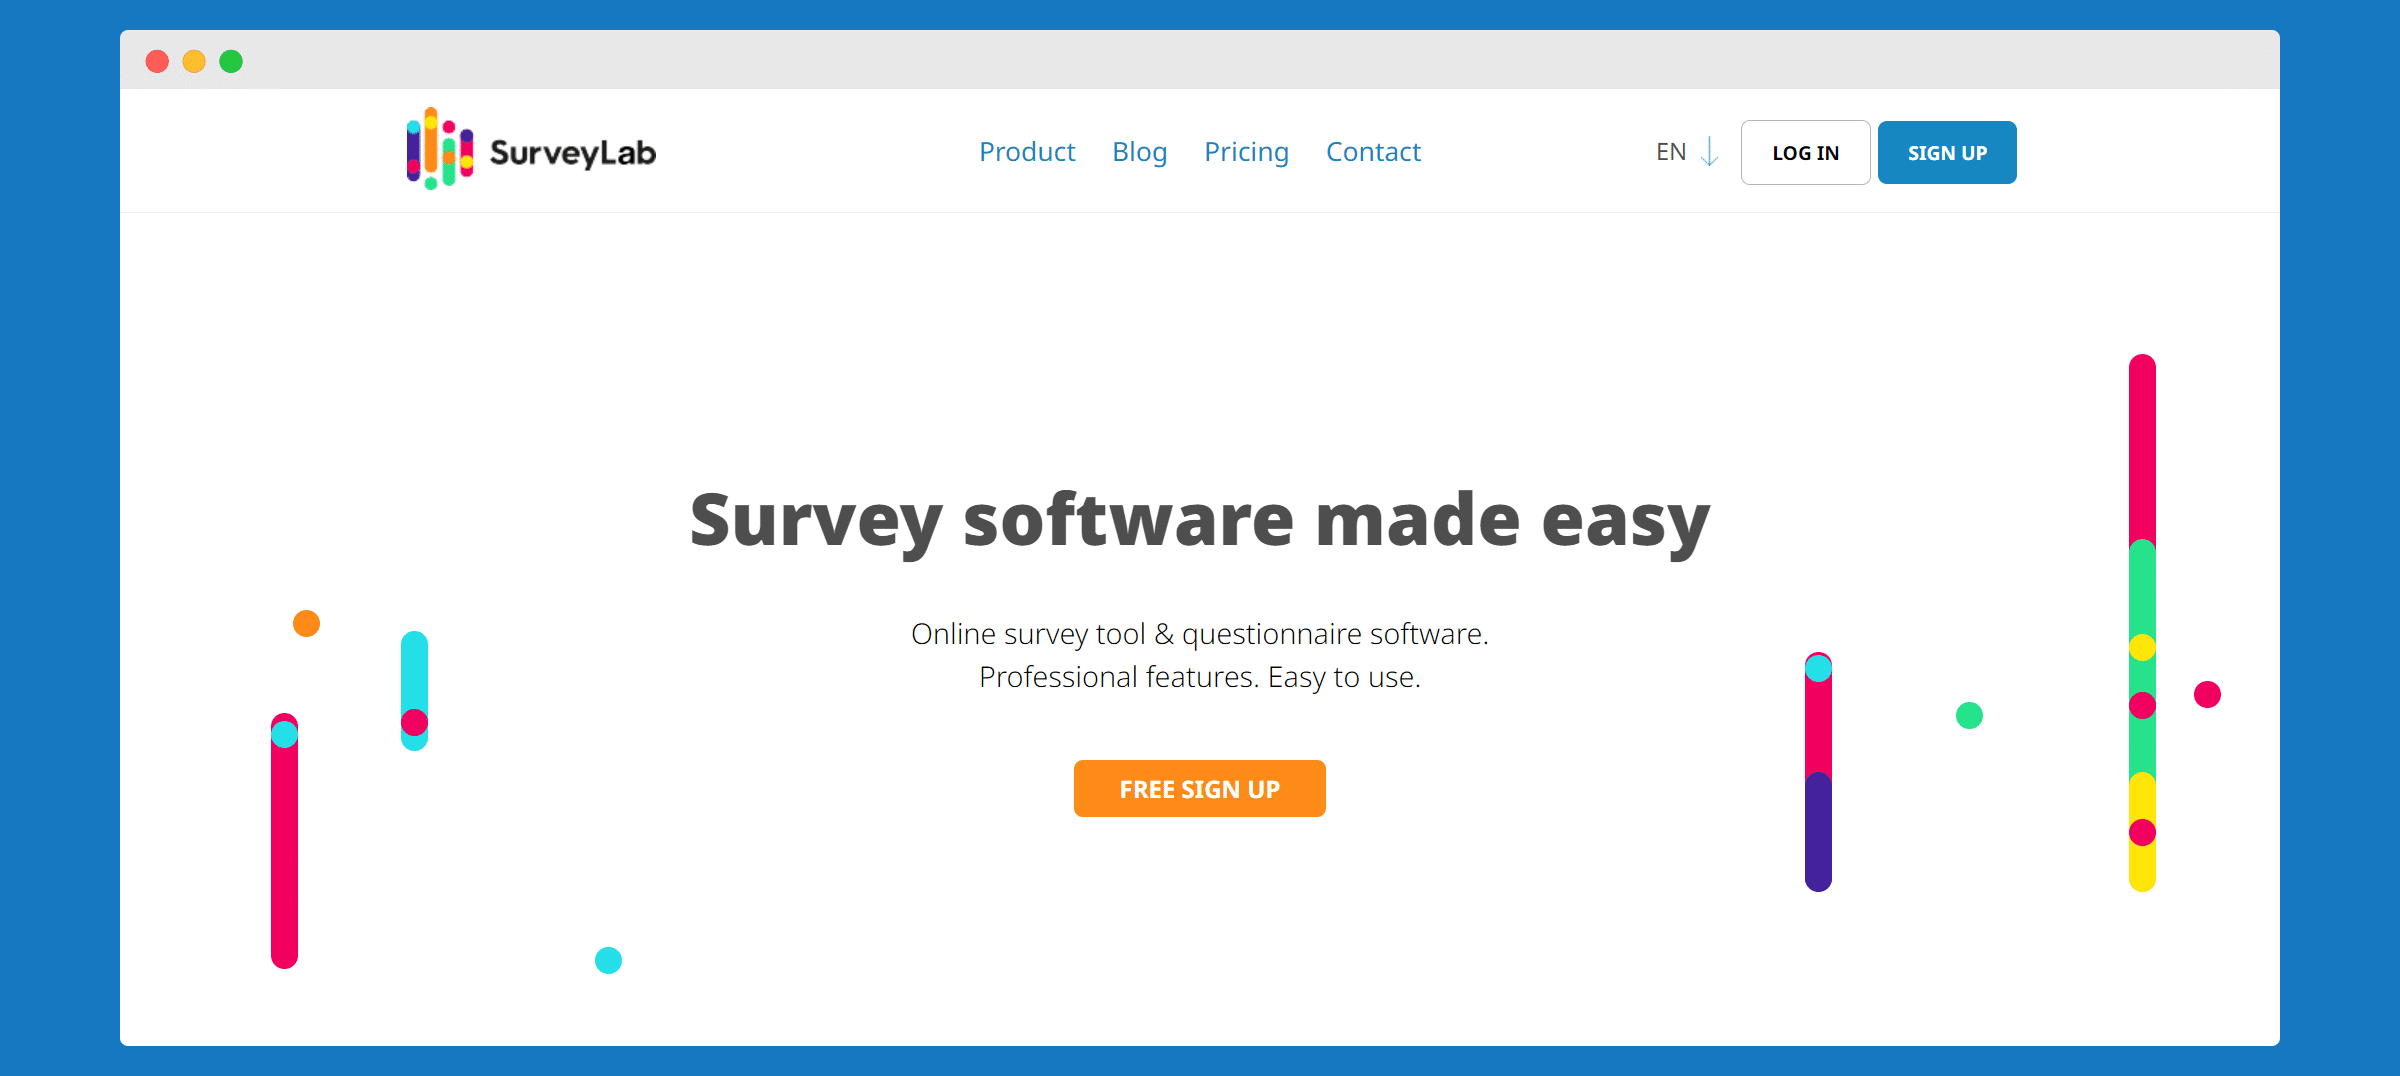 Surveylab as a Wufoo alternative